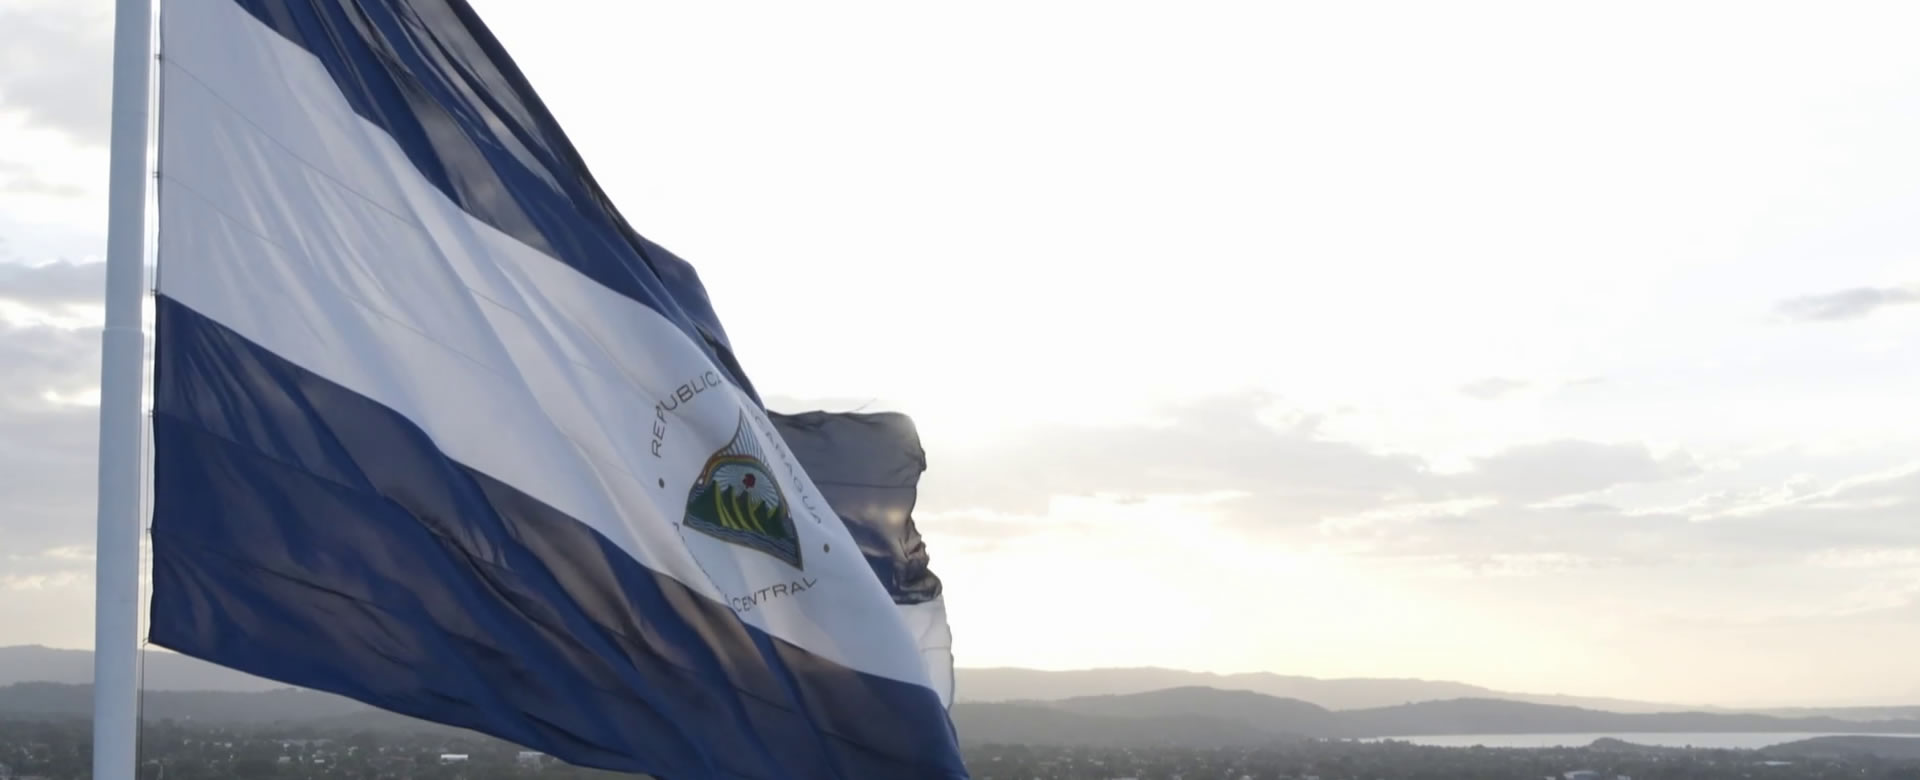 Nicaragua Ecuador convención Viena Celac